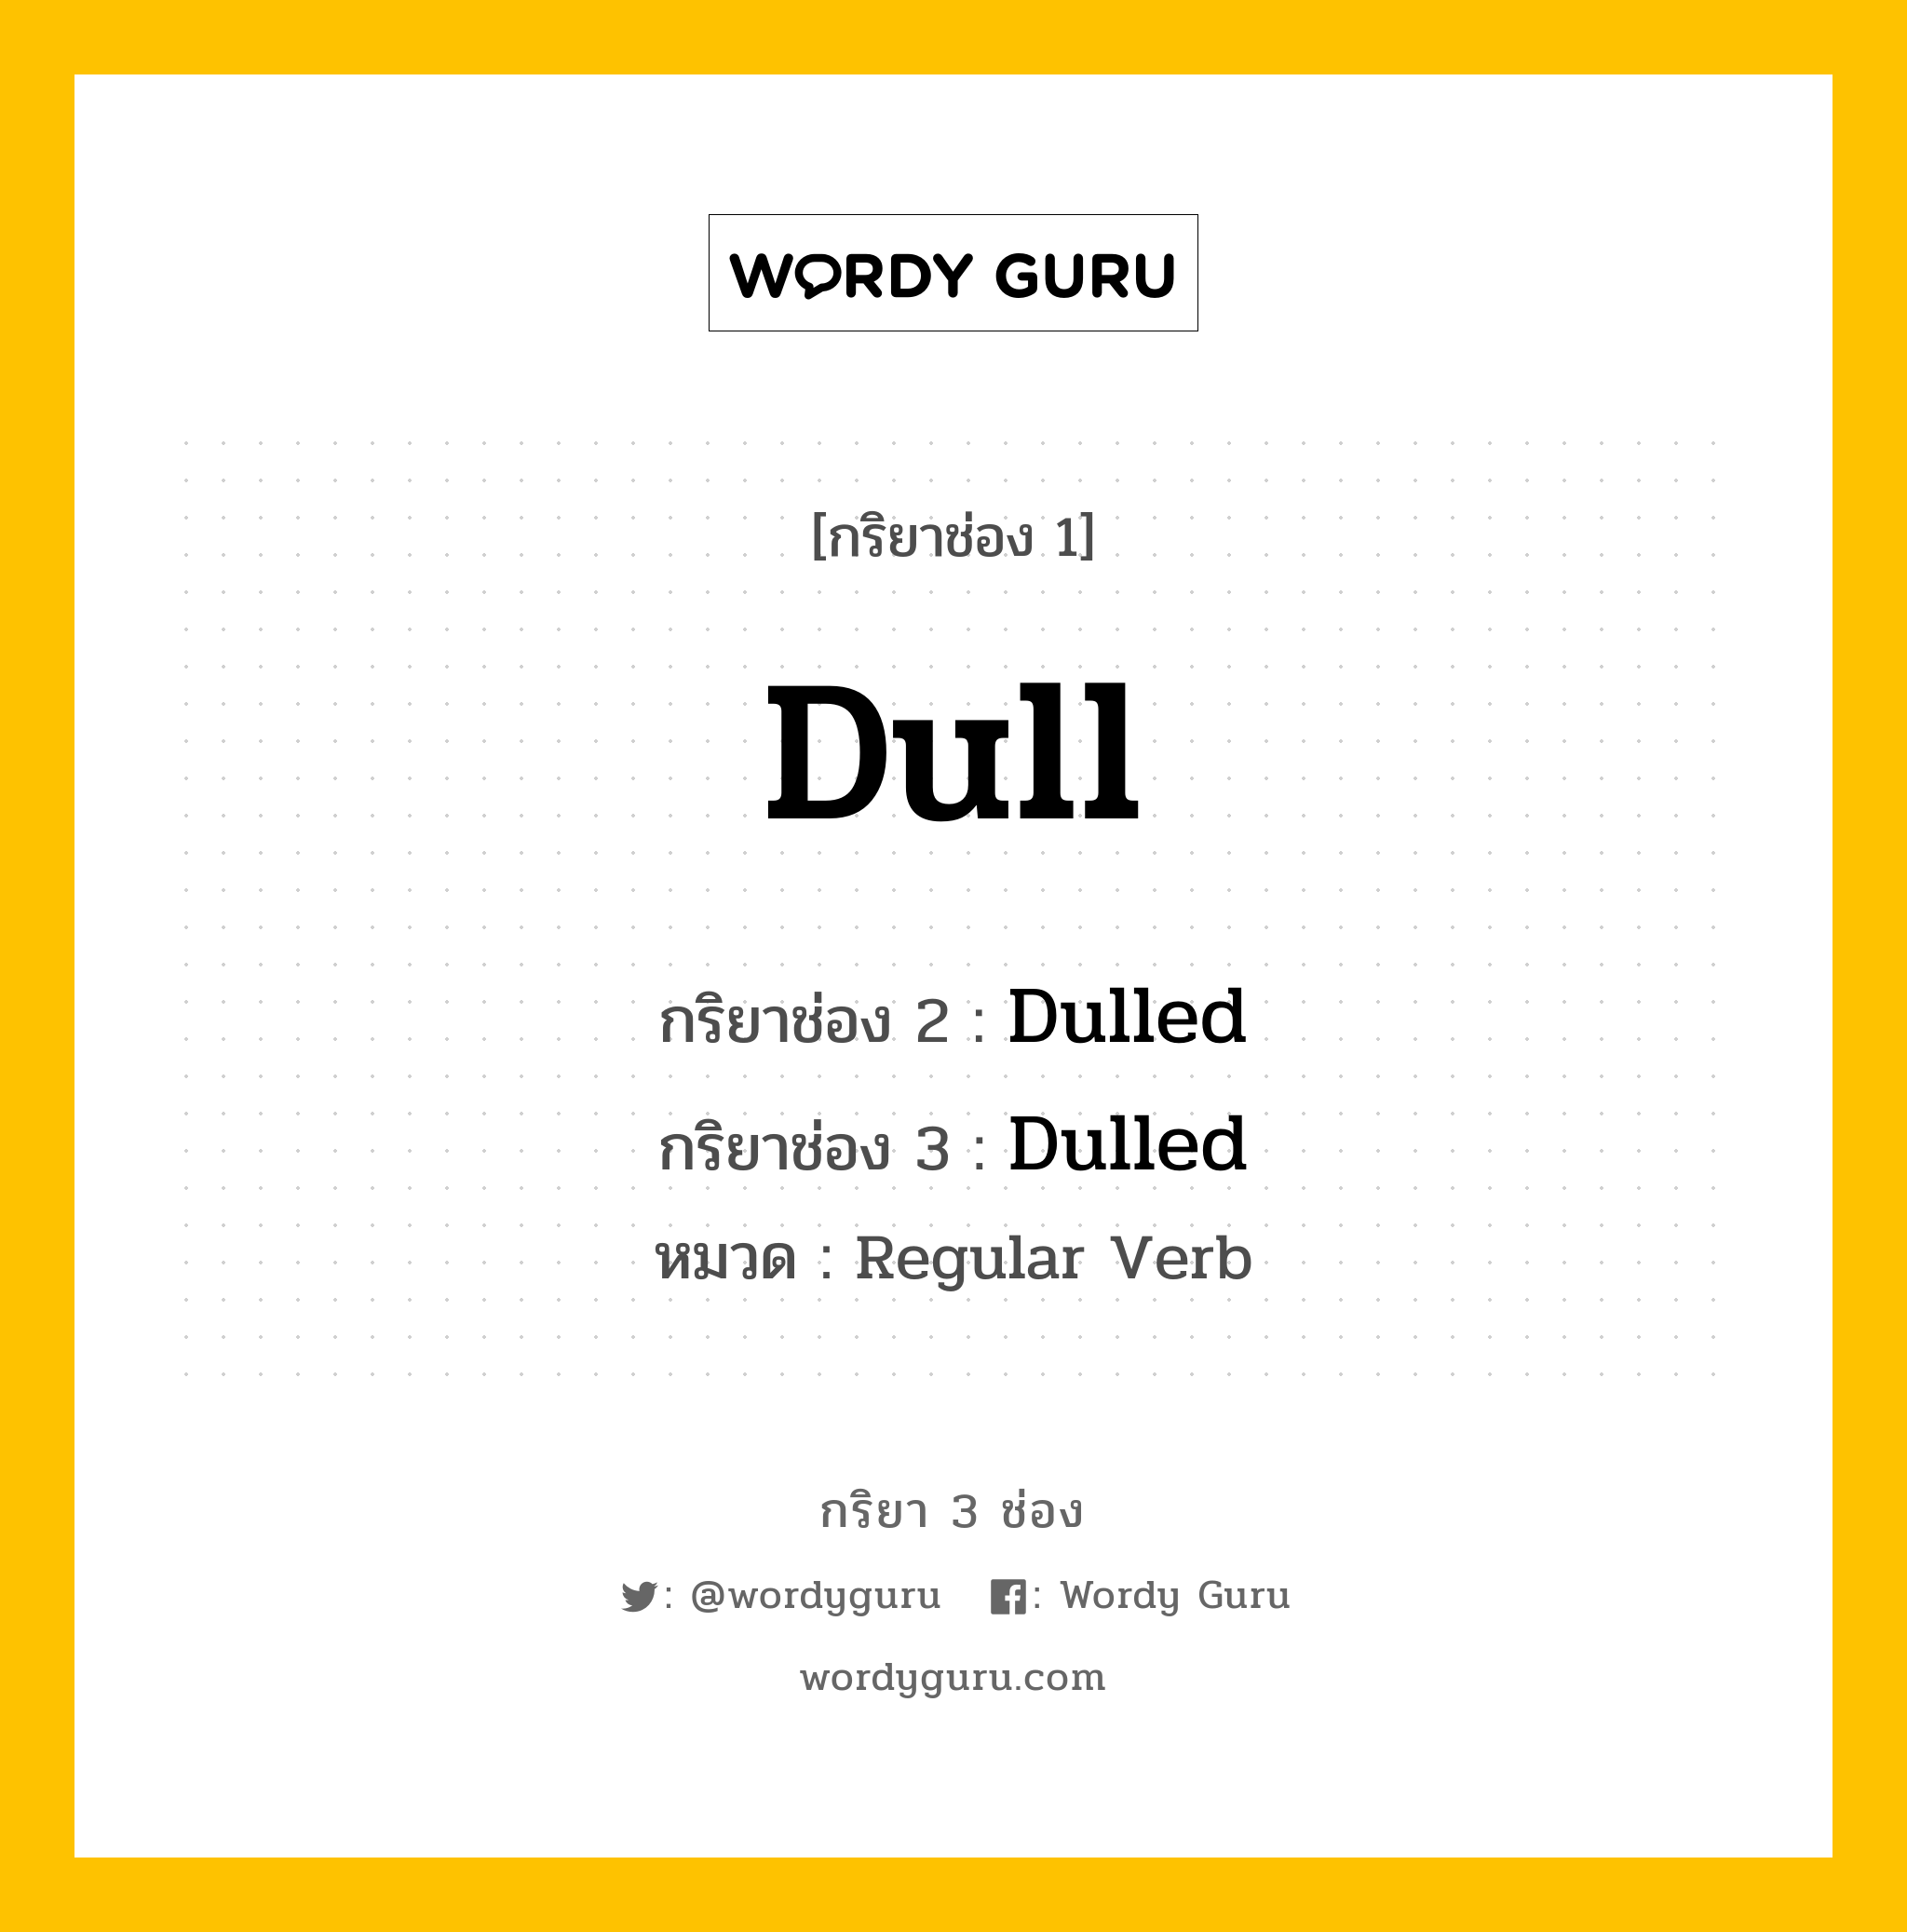 กริยา 3 ช่อง: Dull ช่อง 2 Dull ช่อง 3 คืออะไร, กริยาช่อง 1 Dull กริยาช่อง 2 Dulled กริยาช่อง 3 Dulled หมวด Regular Verb หมวด Regular Verb